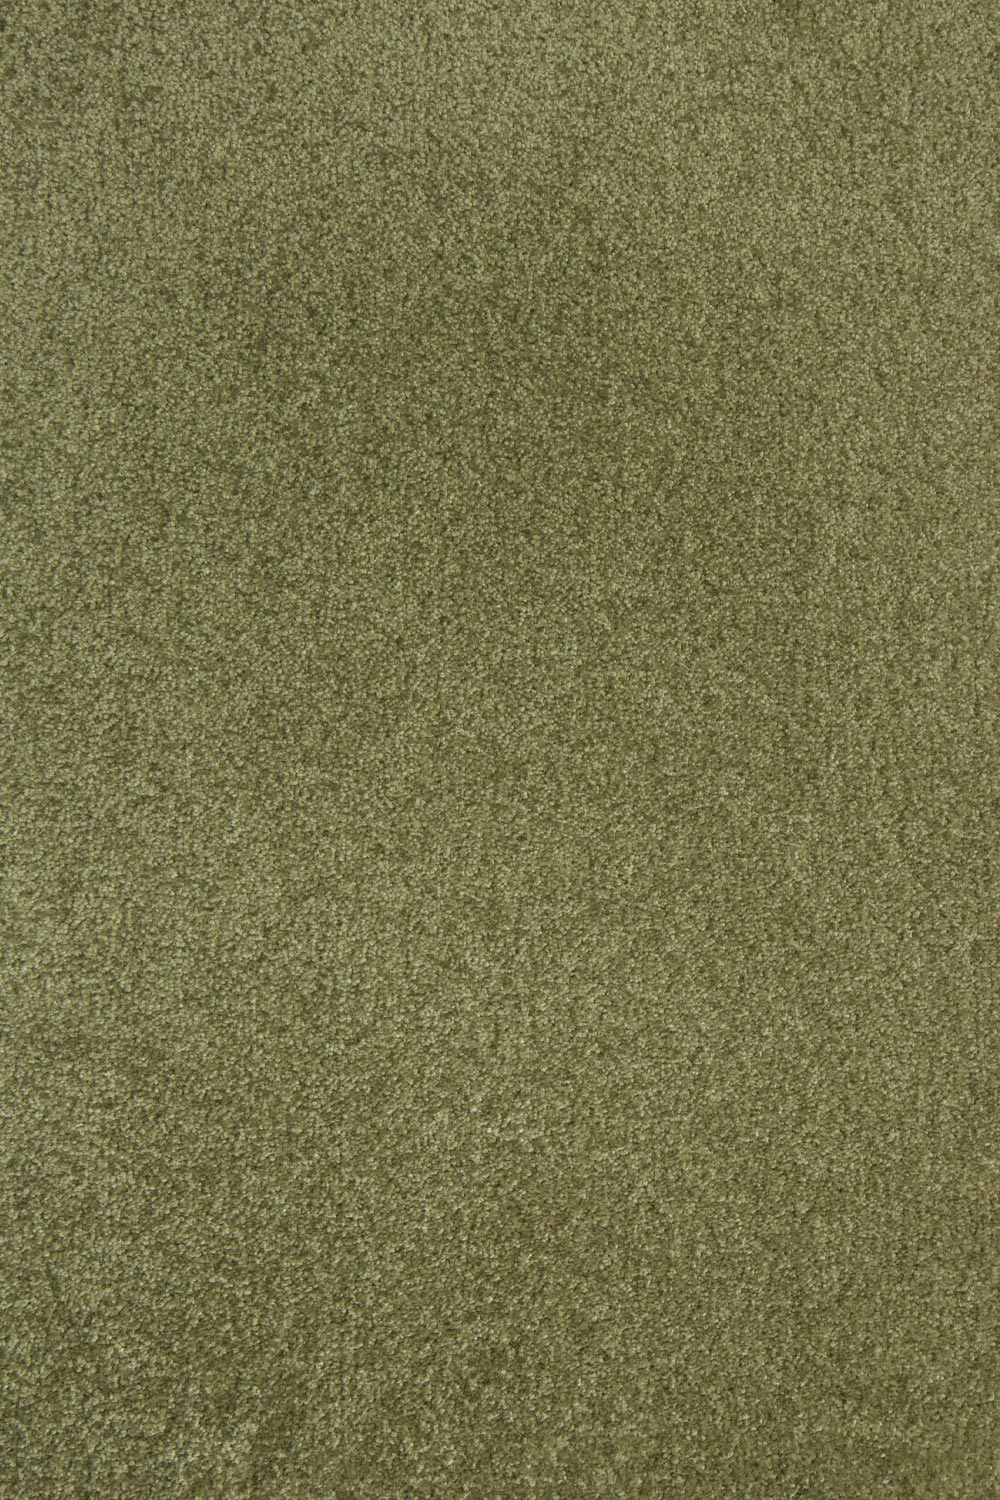 Metrážový koberec Swindon 95 světle šedá